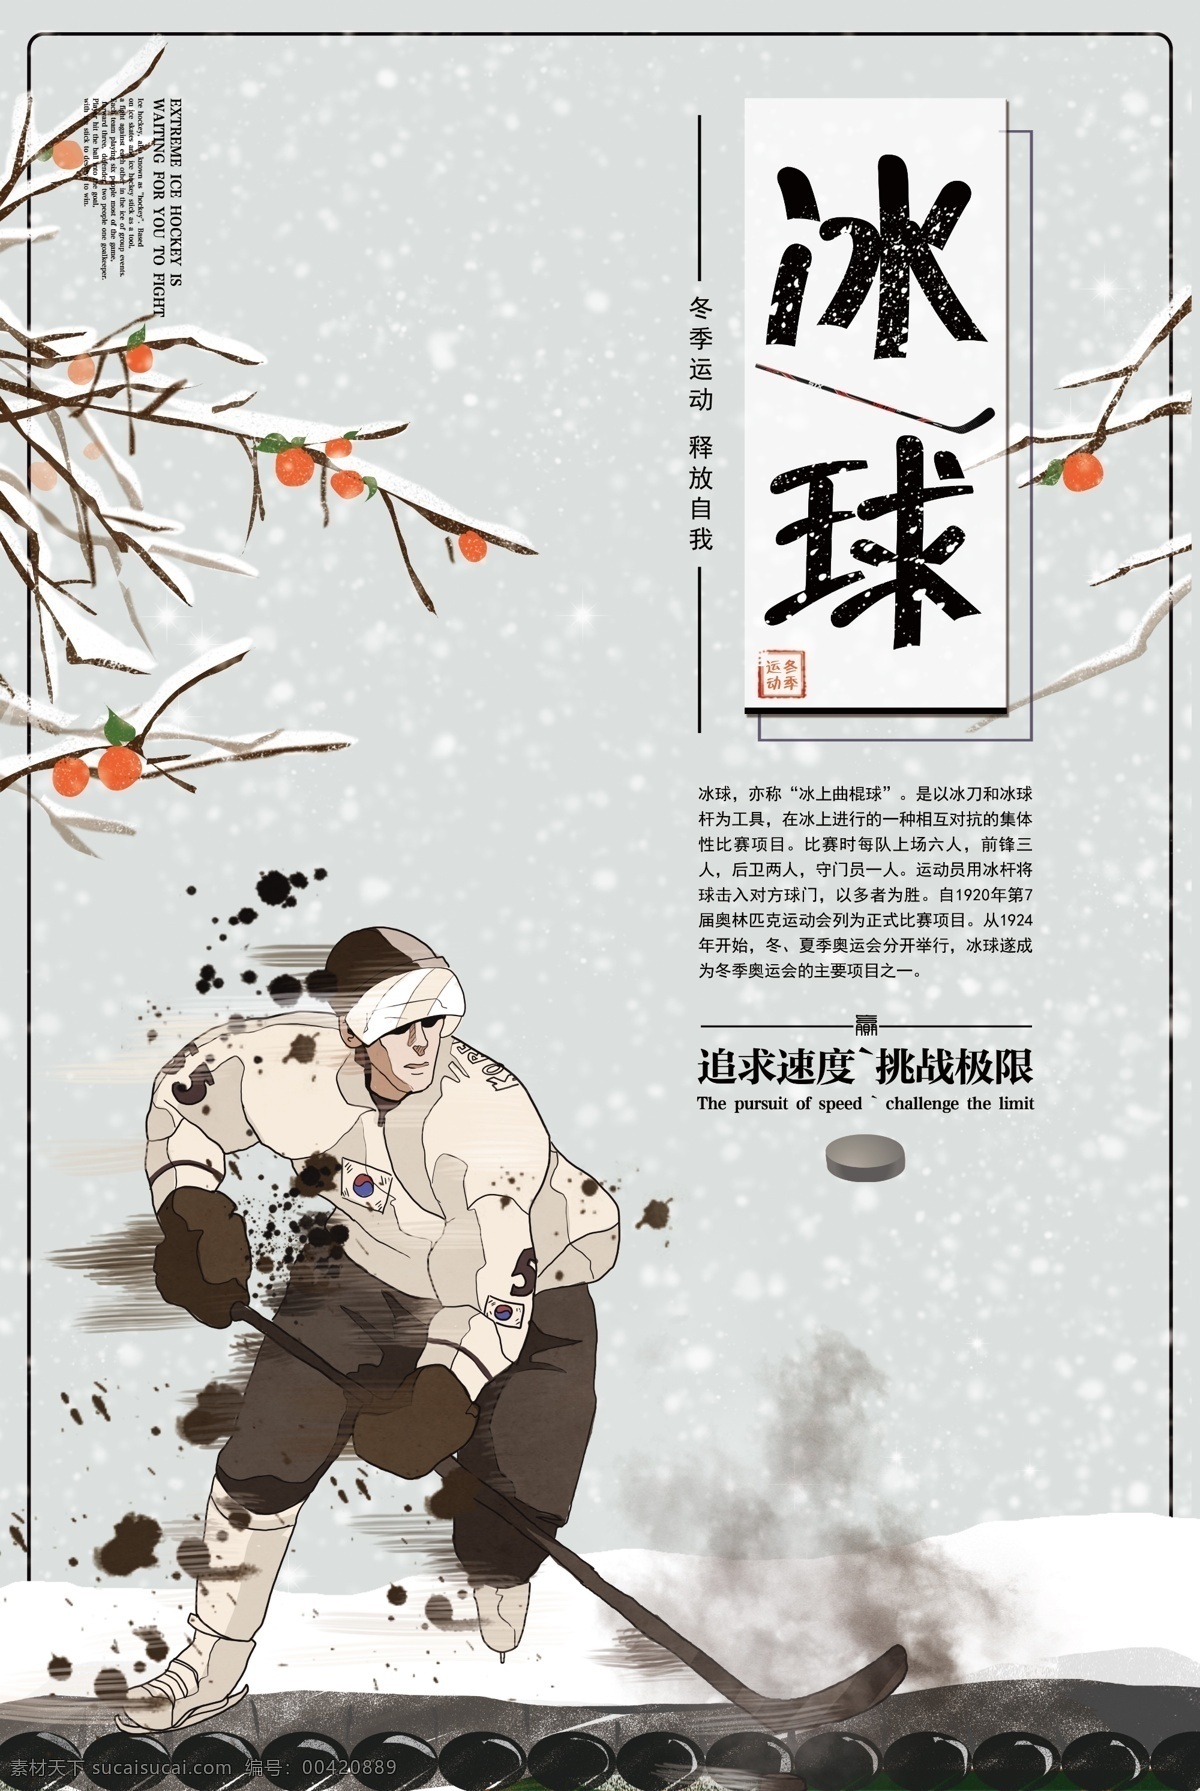 中国 风 冰球 运动 宣传海报 创意海报 游戏 活动海报 中国风 滑雪场海报 海报版式设计 冰雪世界 比赛海报 体育竞技 滑雪 职业冰球 冬奥会 滑冰 冰球海报 背景 下雪 冰球运动 球运动